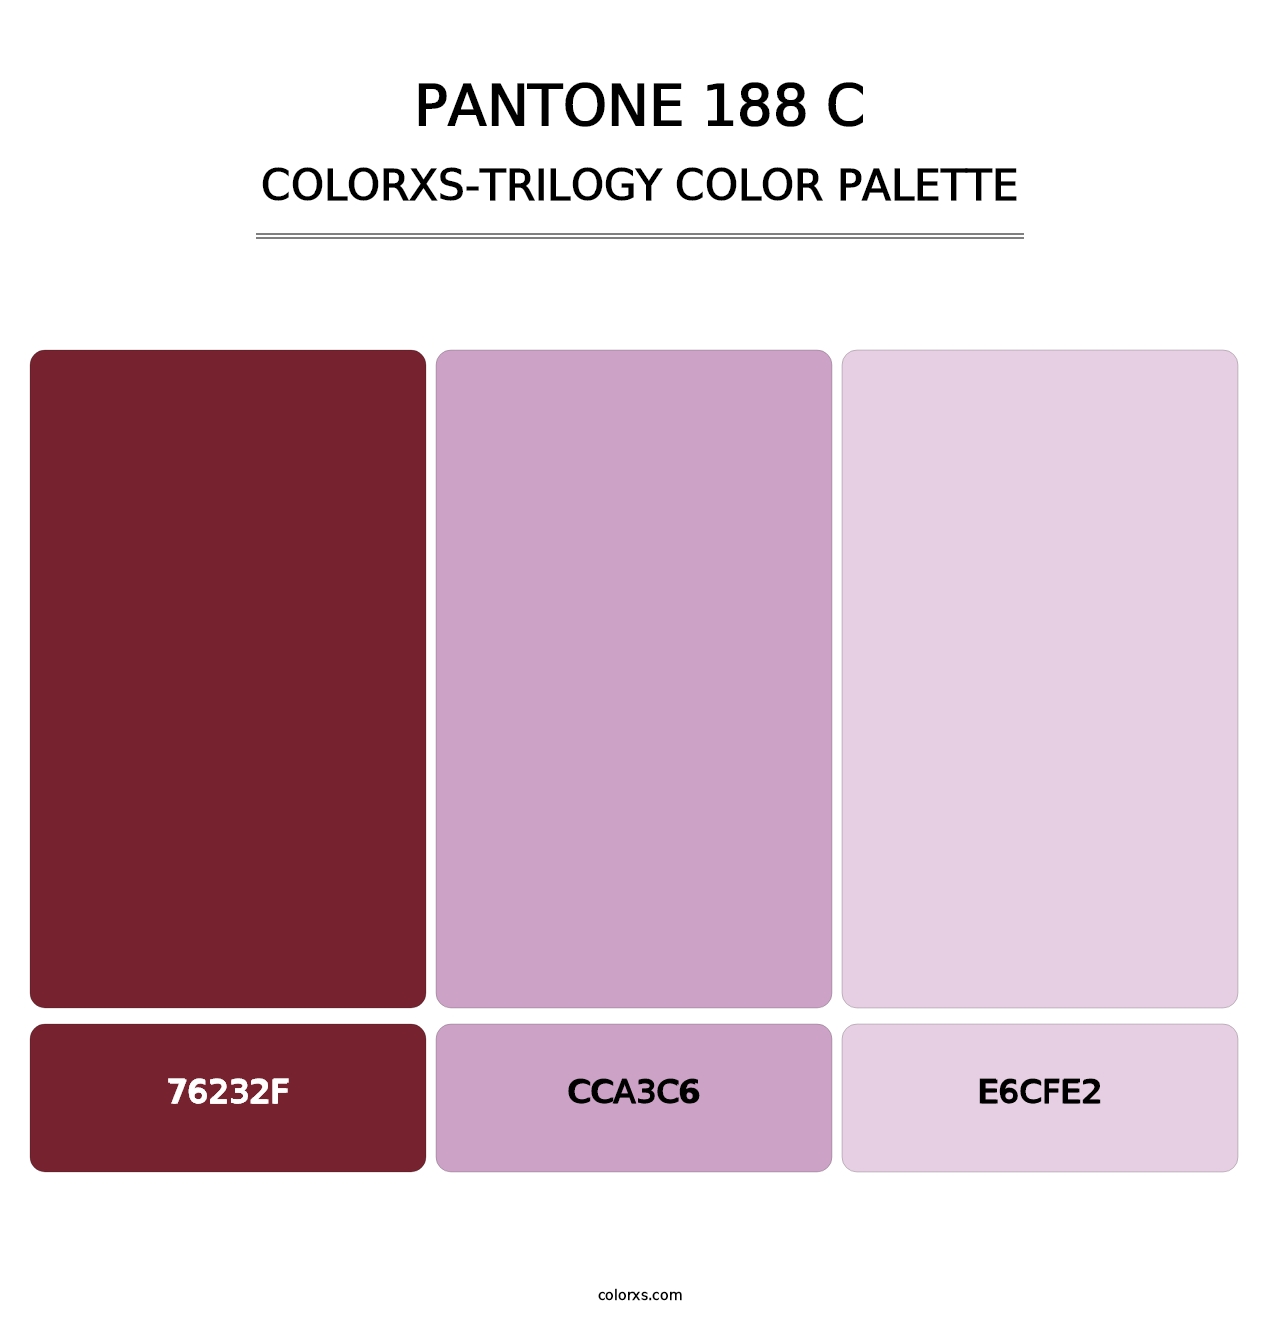 PANTONE 188 C - Colorxs Trilogy Palette